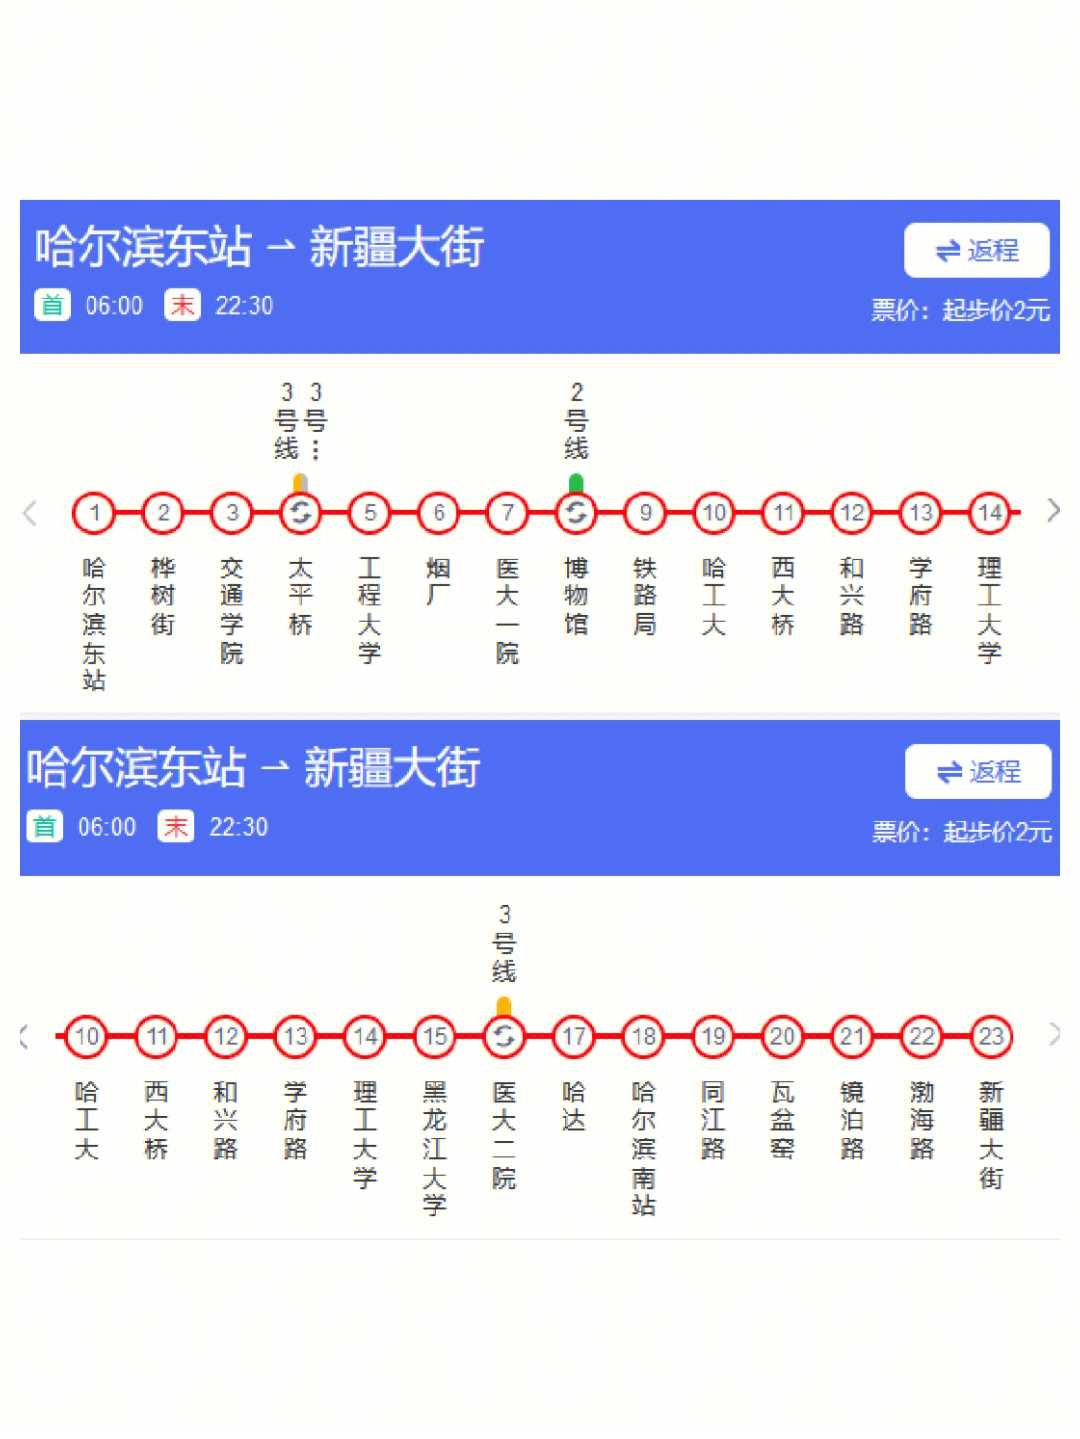 01【地铁】·到哈尔滨之后可以选择坐地铁到中央大街等景点,参观